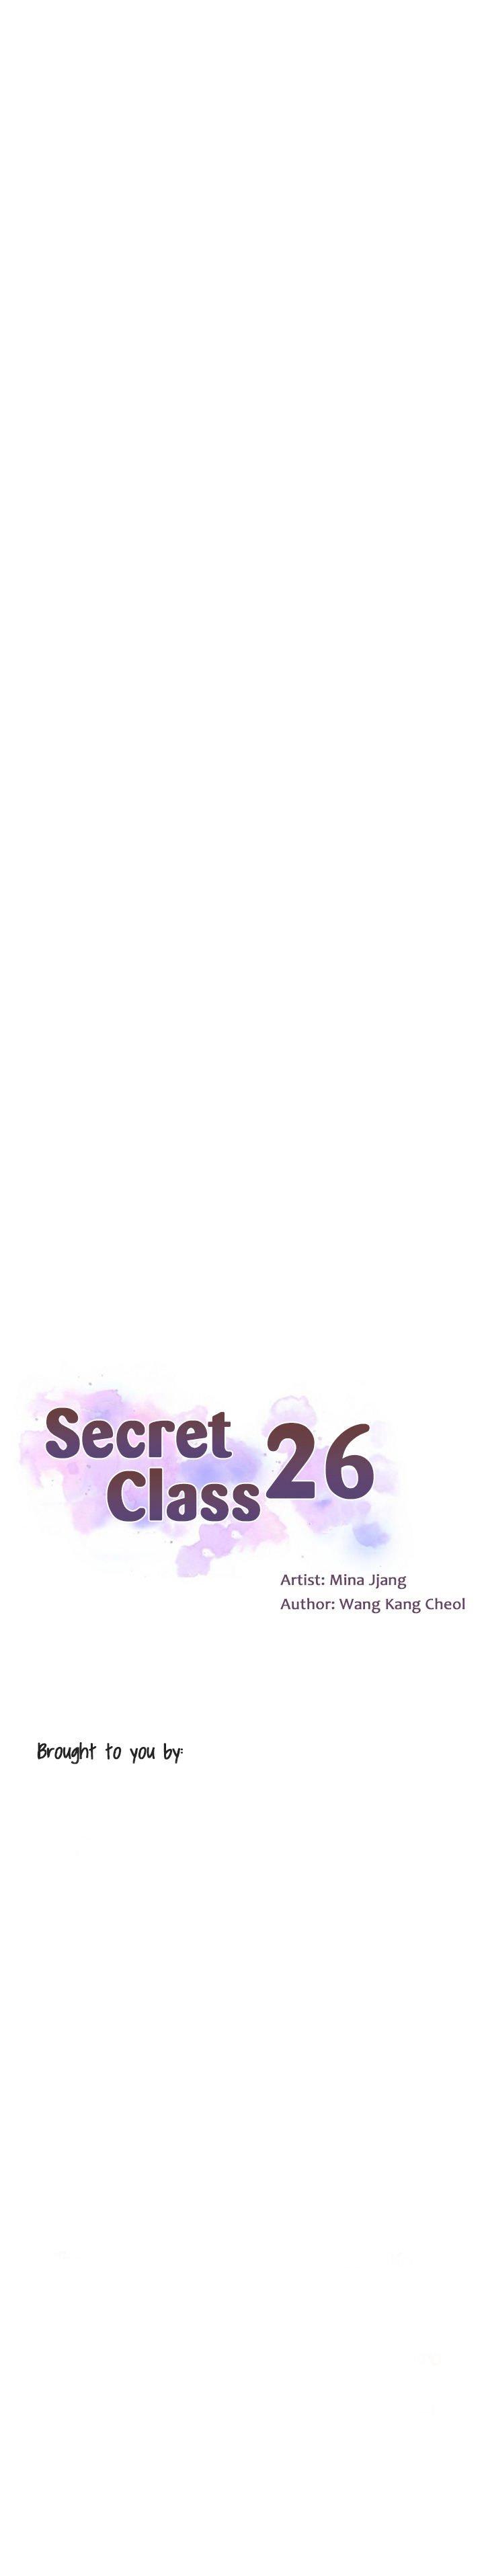 Secret Class Ch.40/? 362